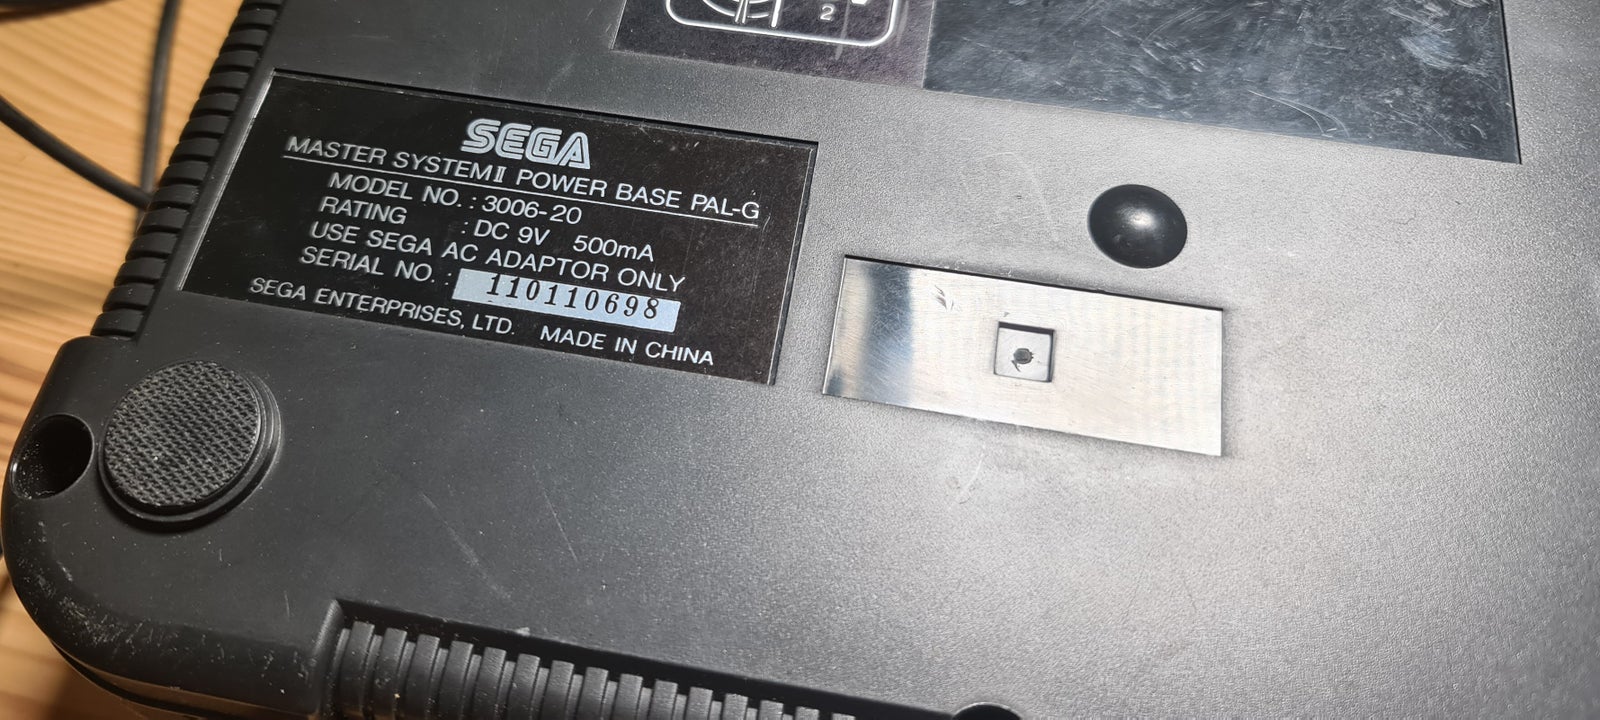 SEGA Master System II, spillekonsol, God